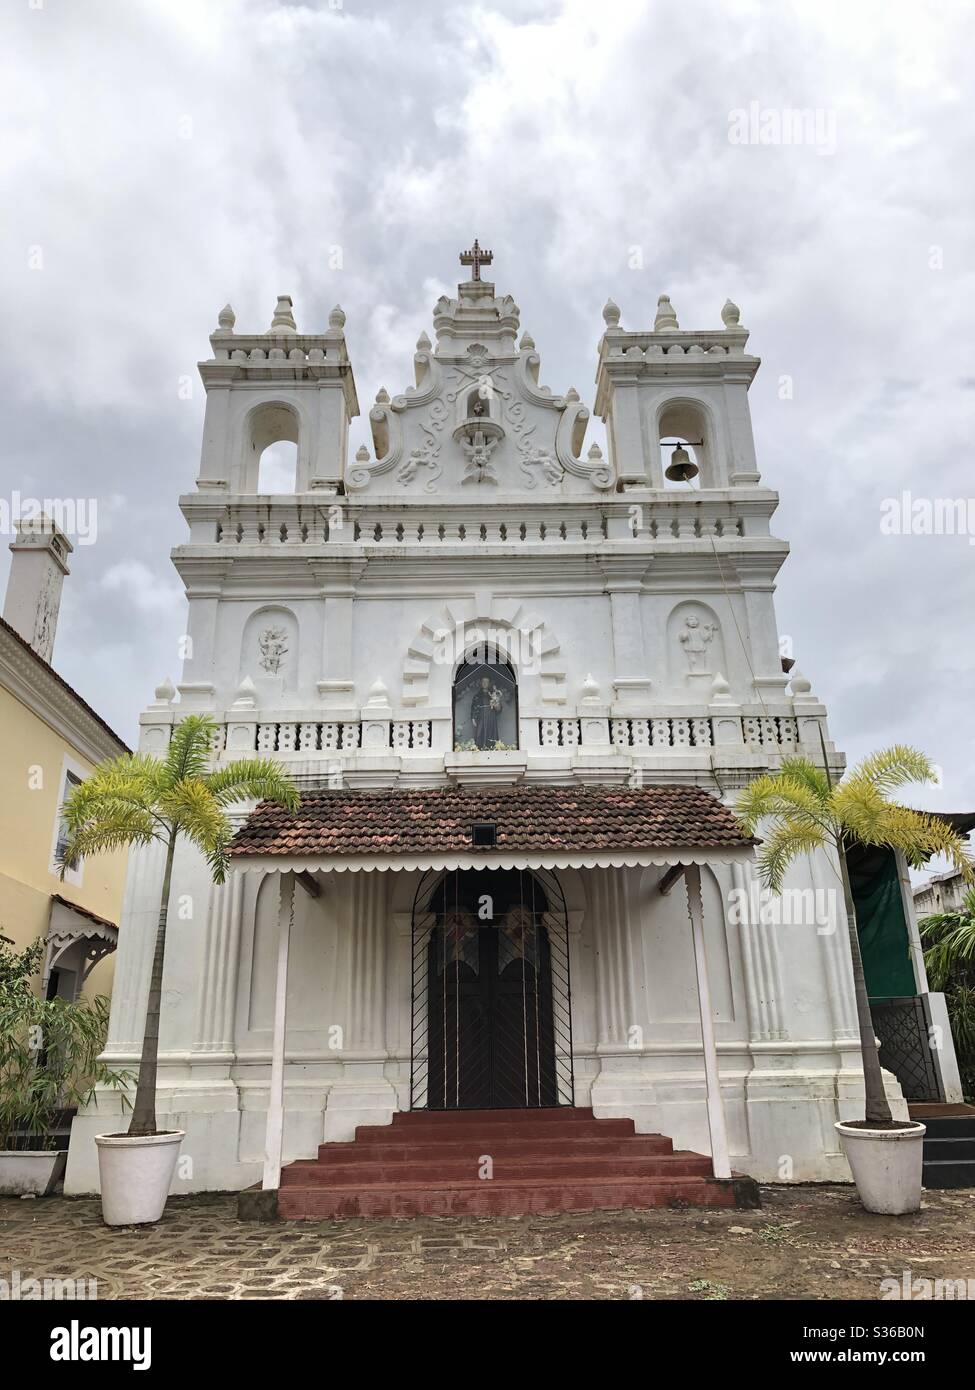 Una cappella cattolica romana costruita dai portoghesi si trova nel cortile del Forte di Tiracol nel villaggio di Tiracol, Goa, India, 28 maggio 2020. Il Portogallo ha governato Goa per 451 anni. Foto Stock